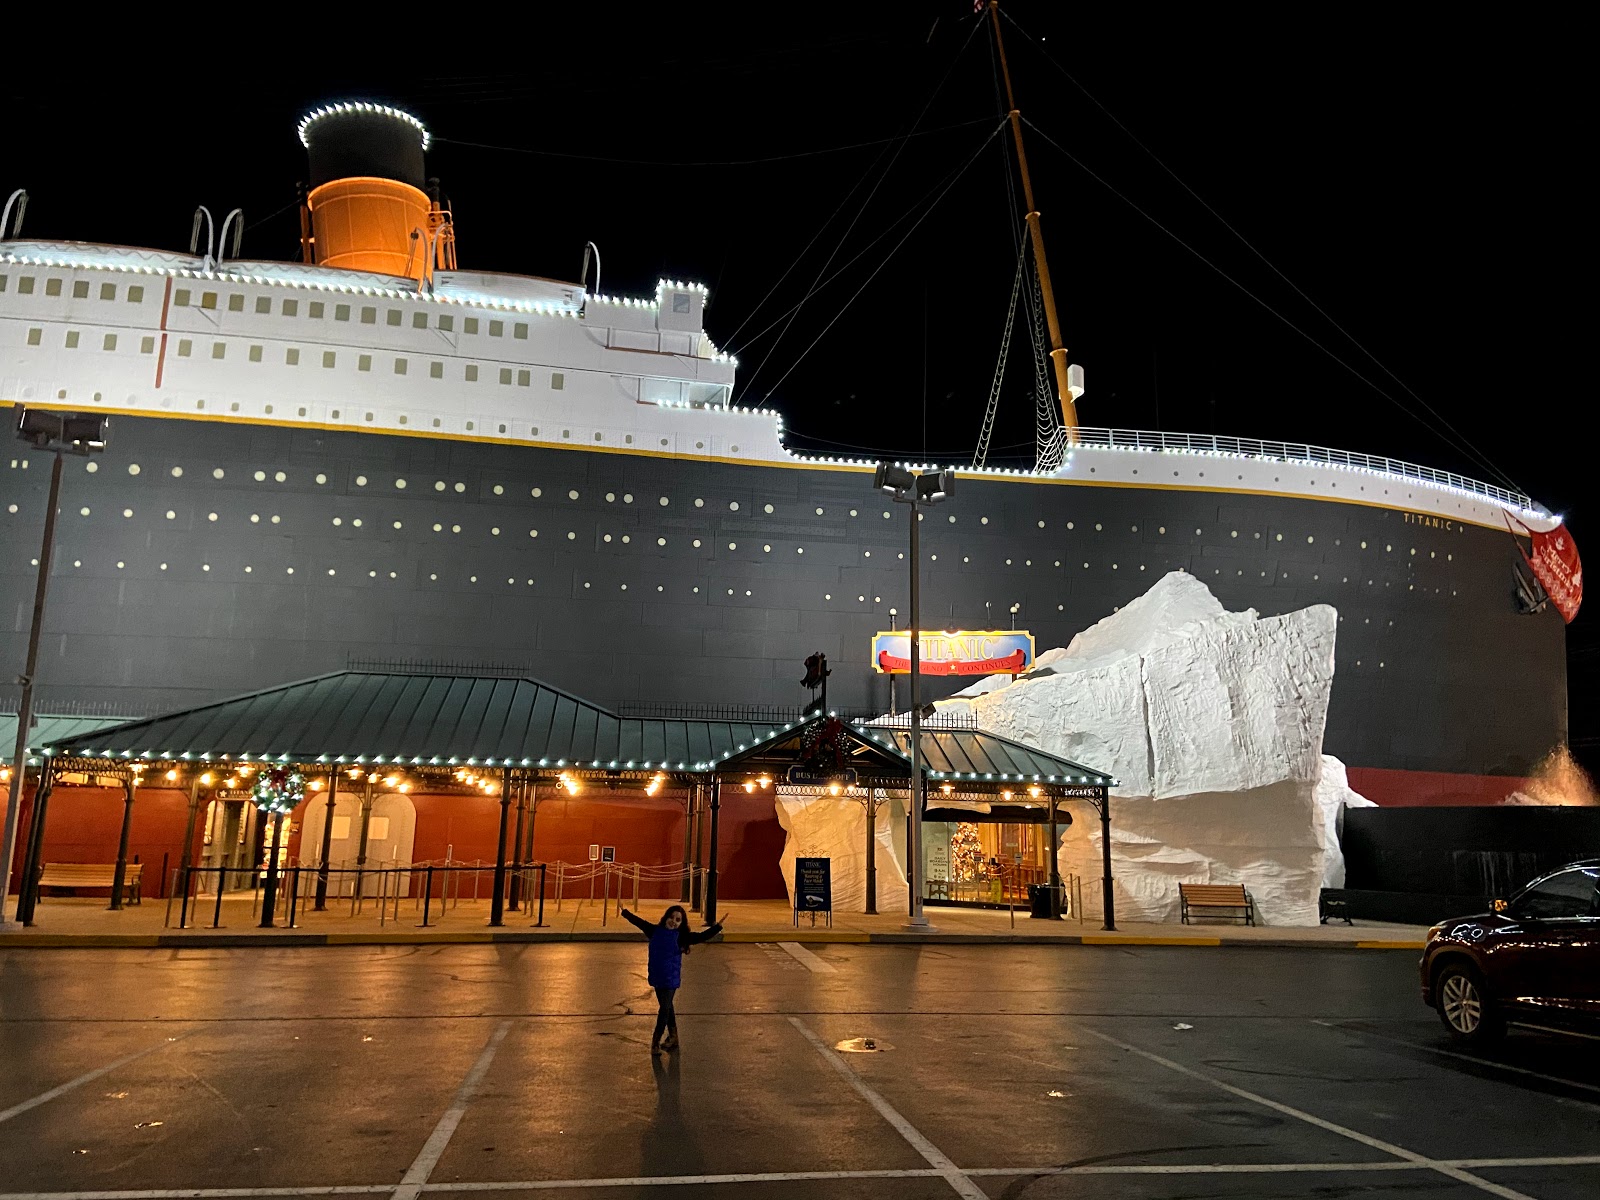 tour of titanic museum